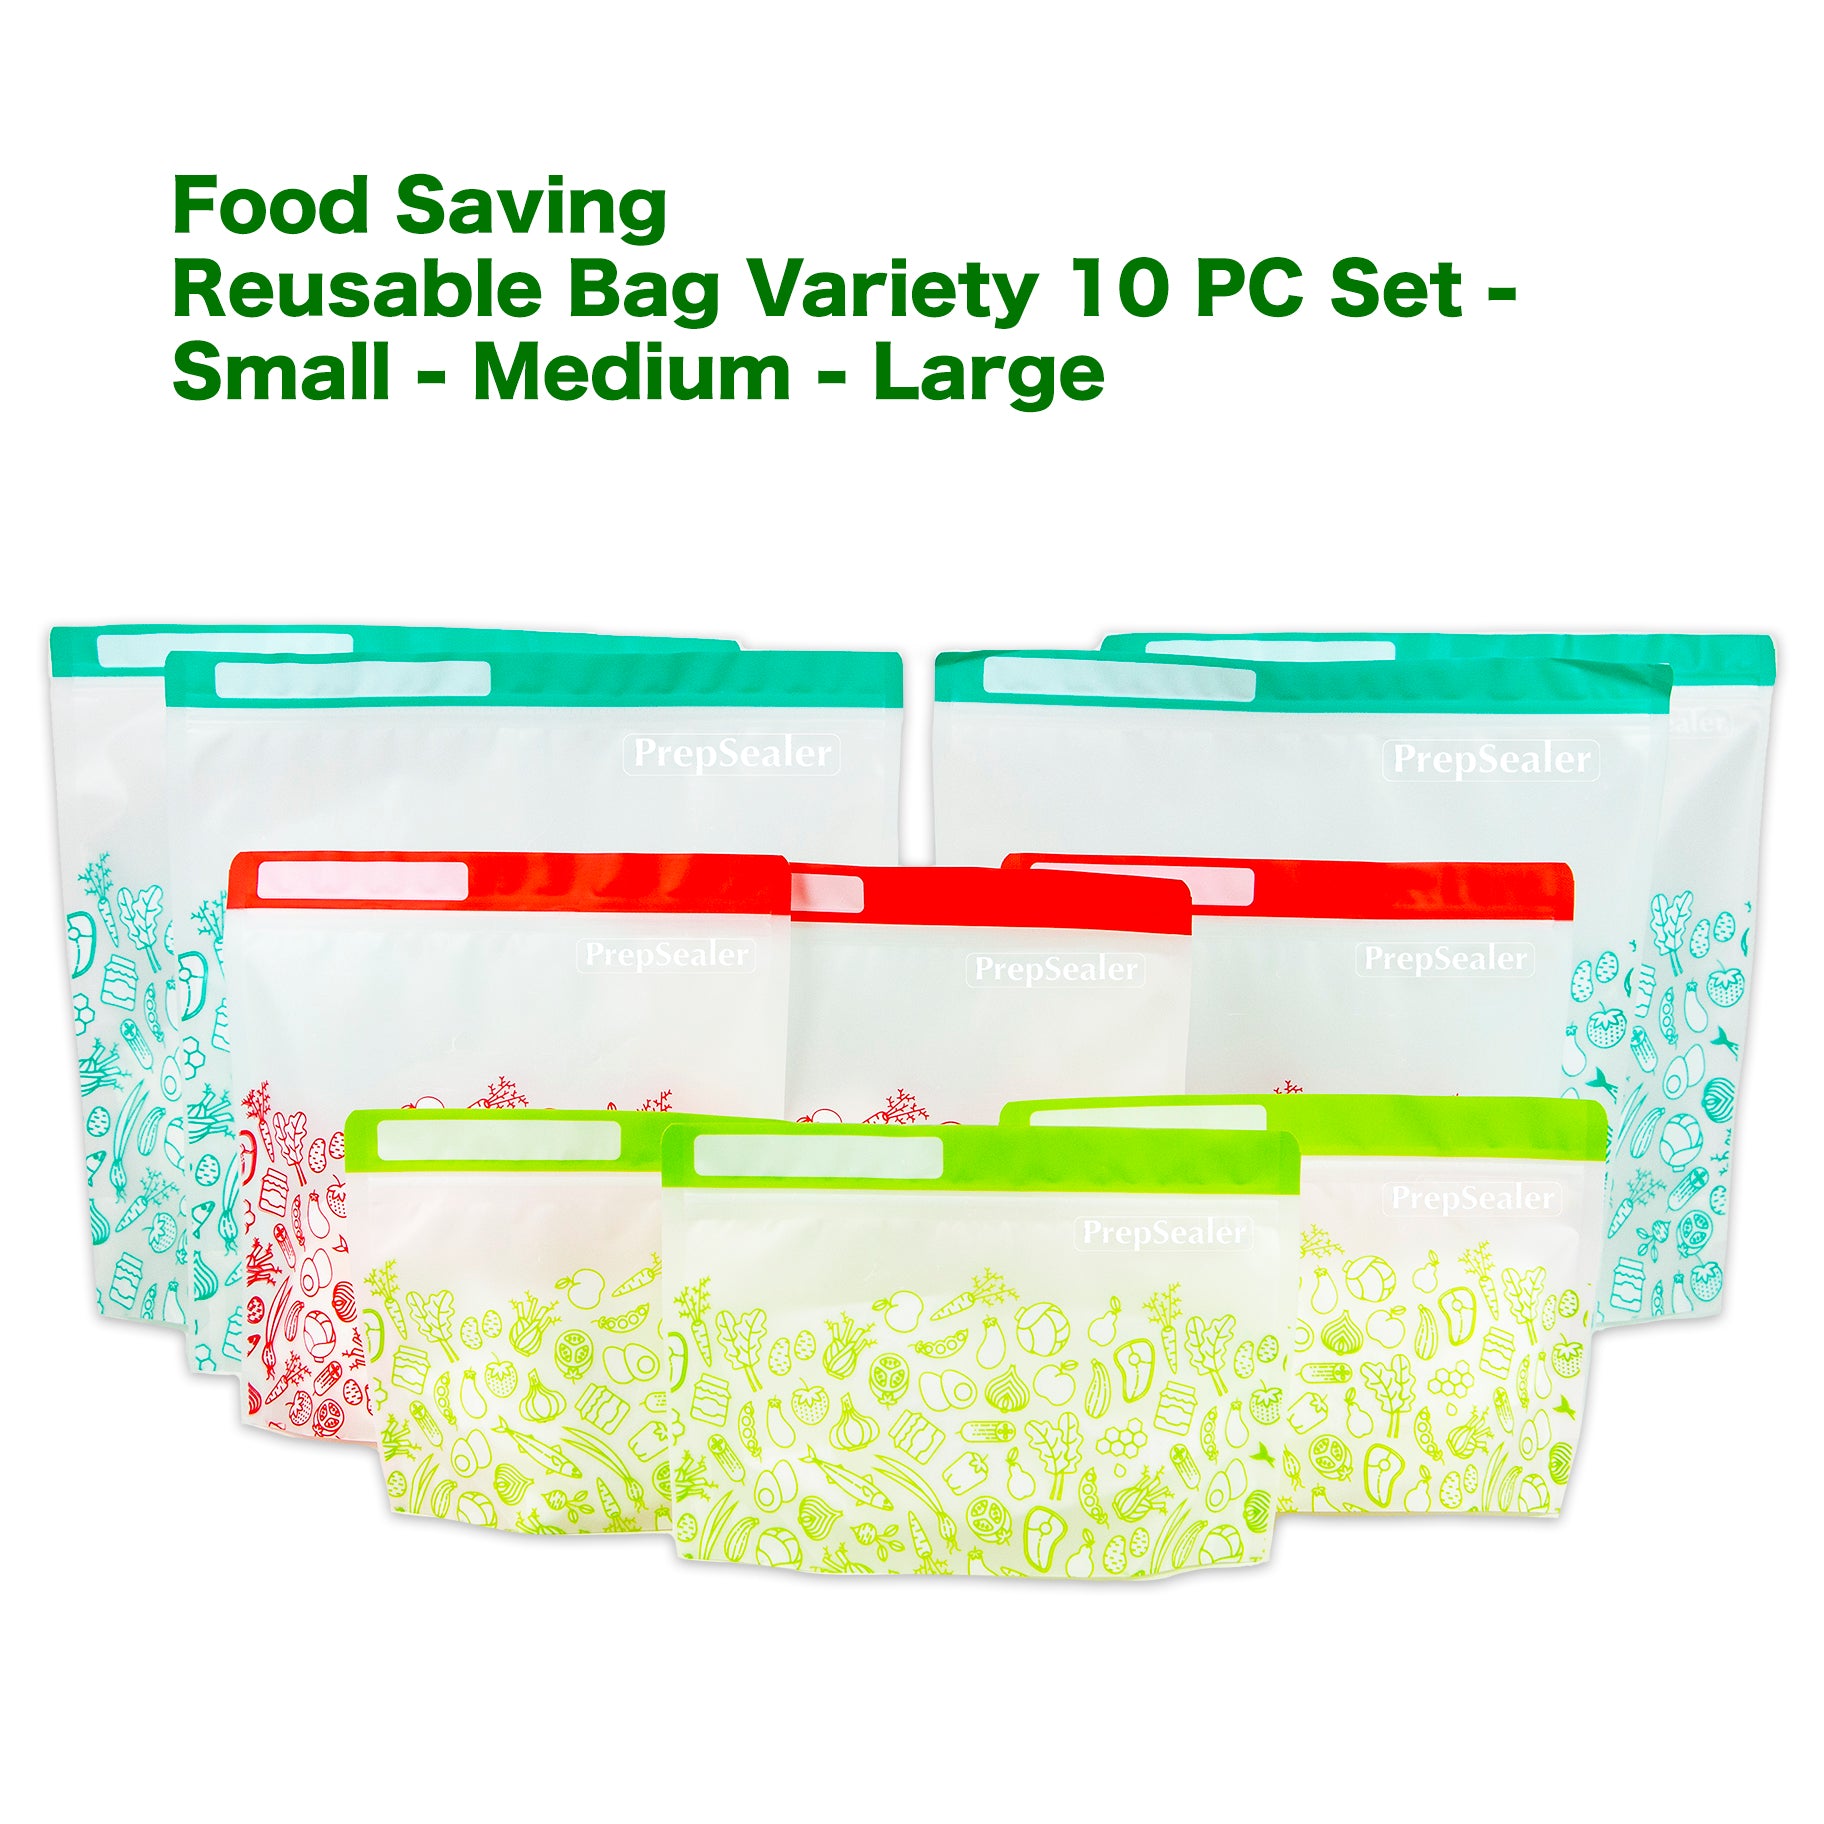 Keep Food Fresh 3X Times longer Food Saving Reusable Bag - Variety